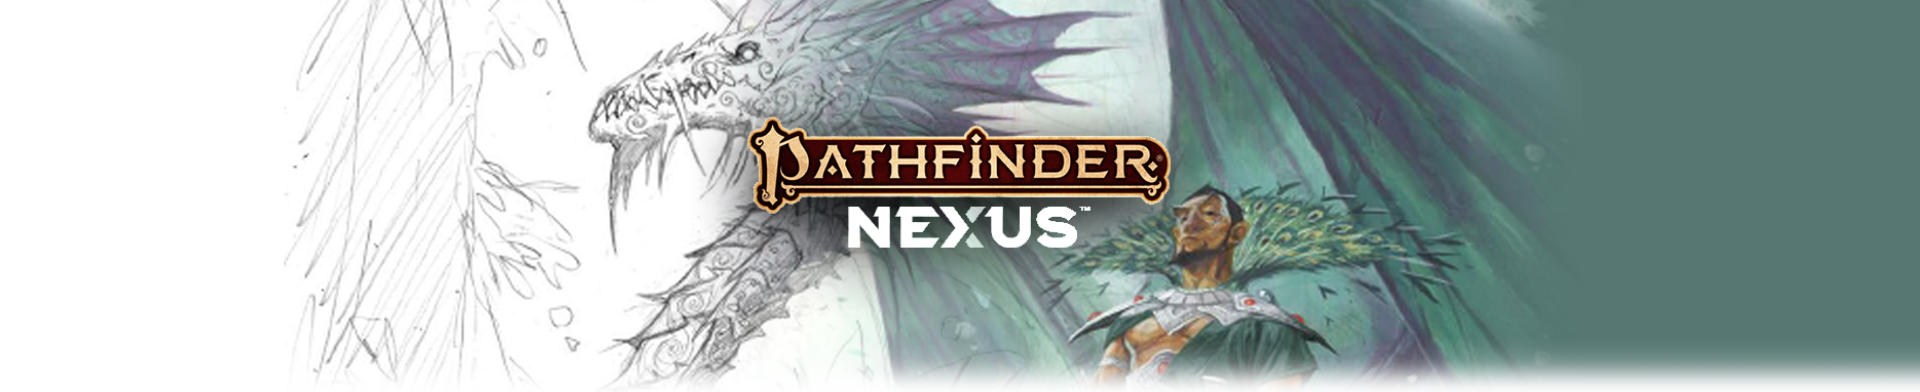 Pathfinder 2nd Edition Remaster Program on Demiplane's Pathfinder NEXUS Header Image